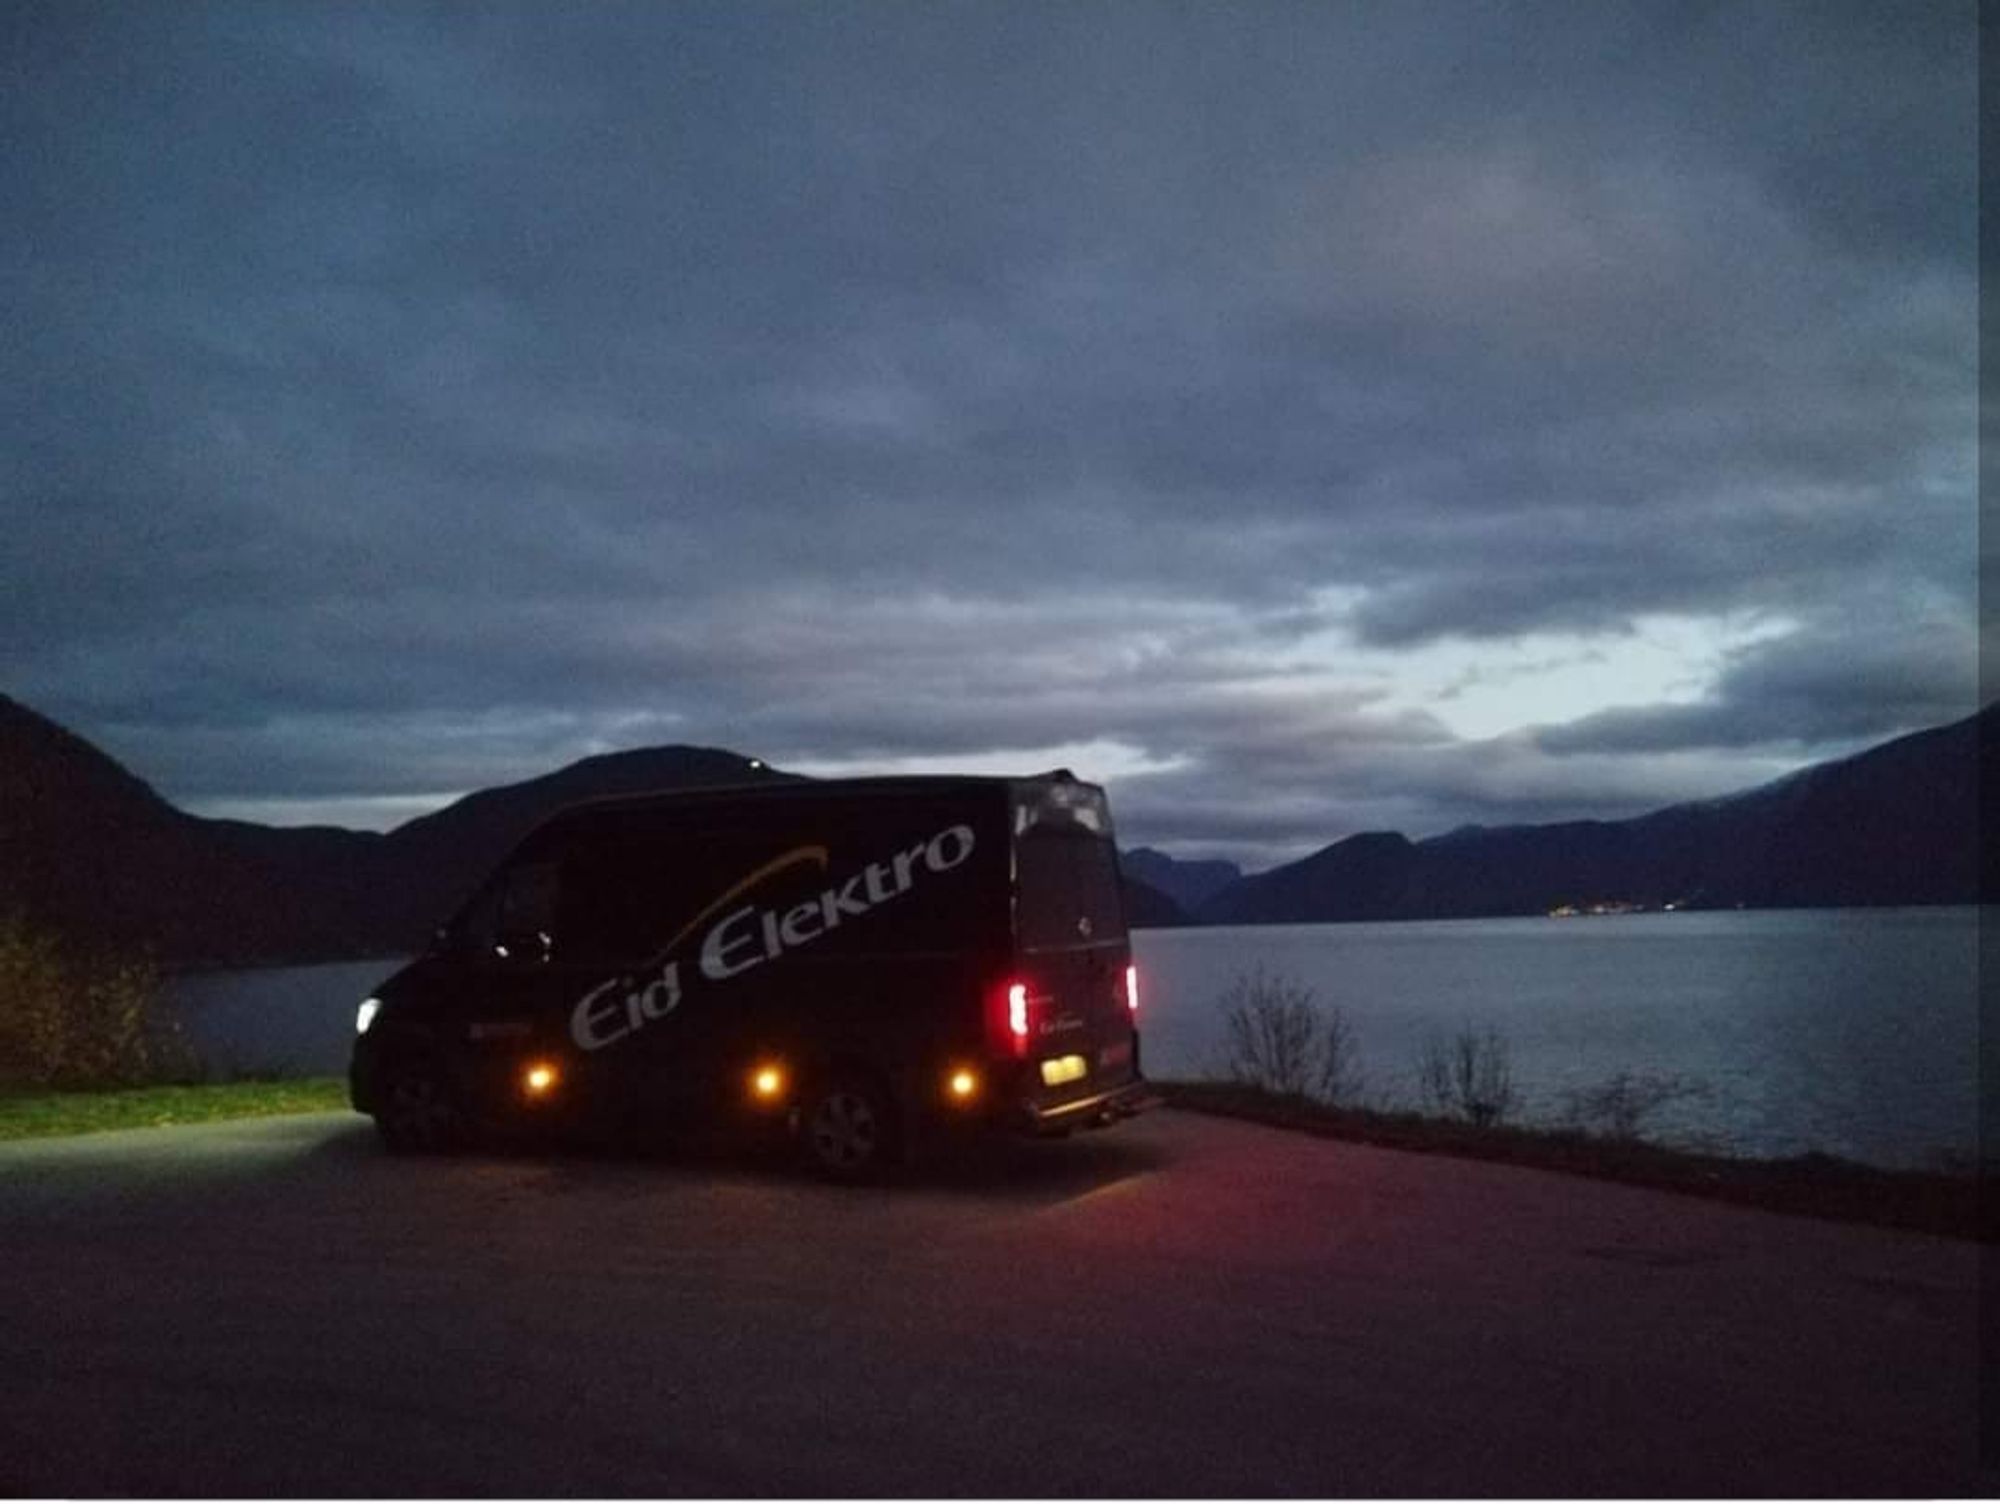 Eid Elektro bil med en fjord i bakgrunnen, det er mørkt ute.